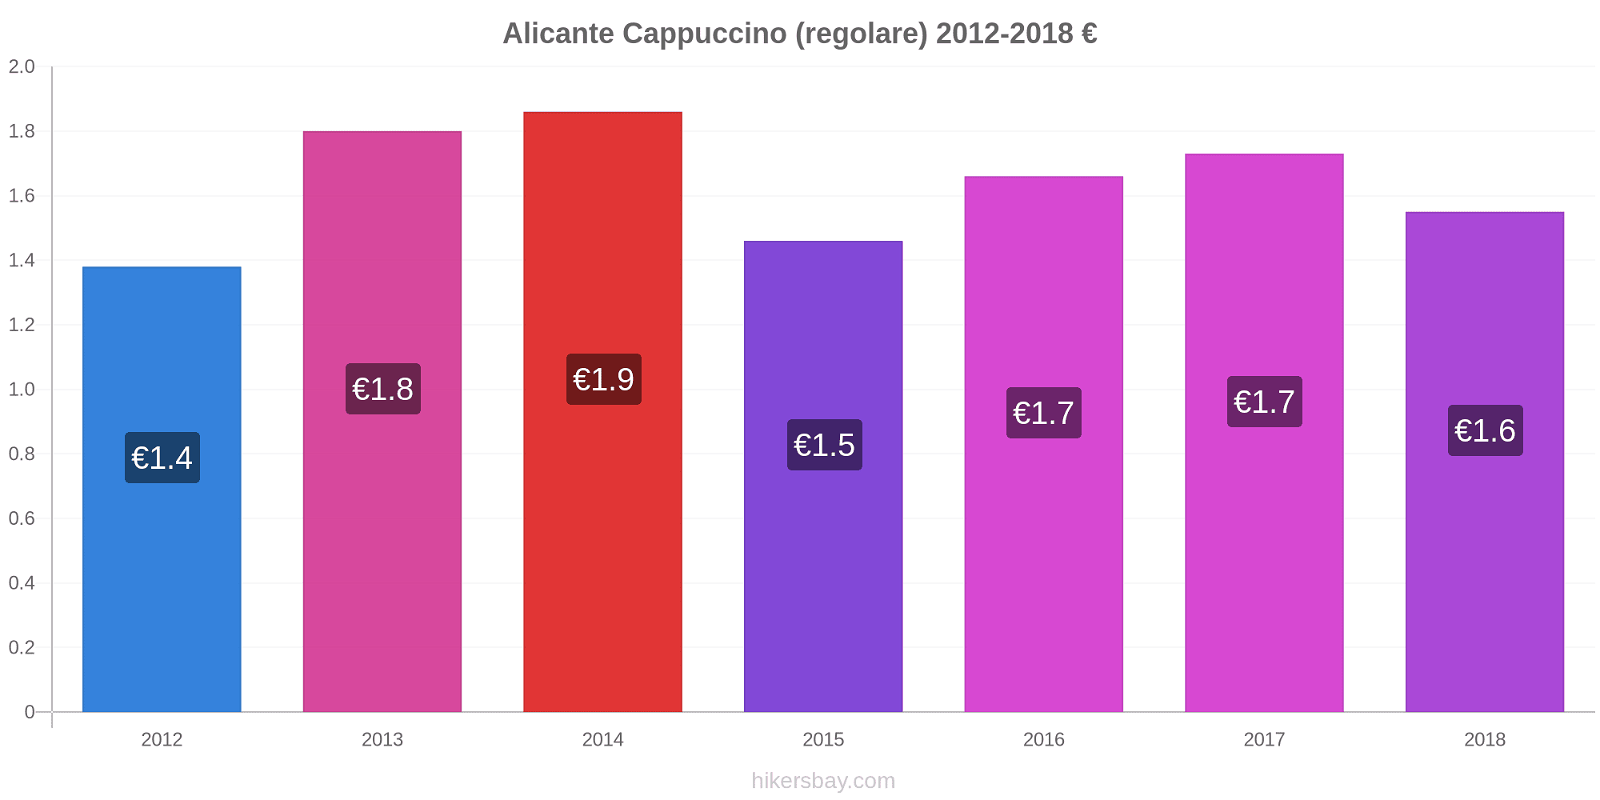 Alicante variazioni di prezzo Cappuccino (normale) hikersbay.com